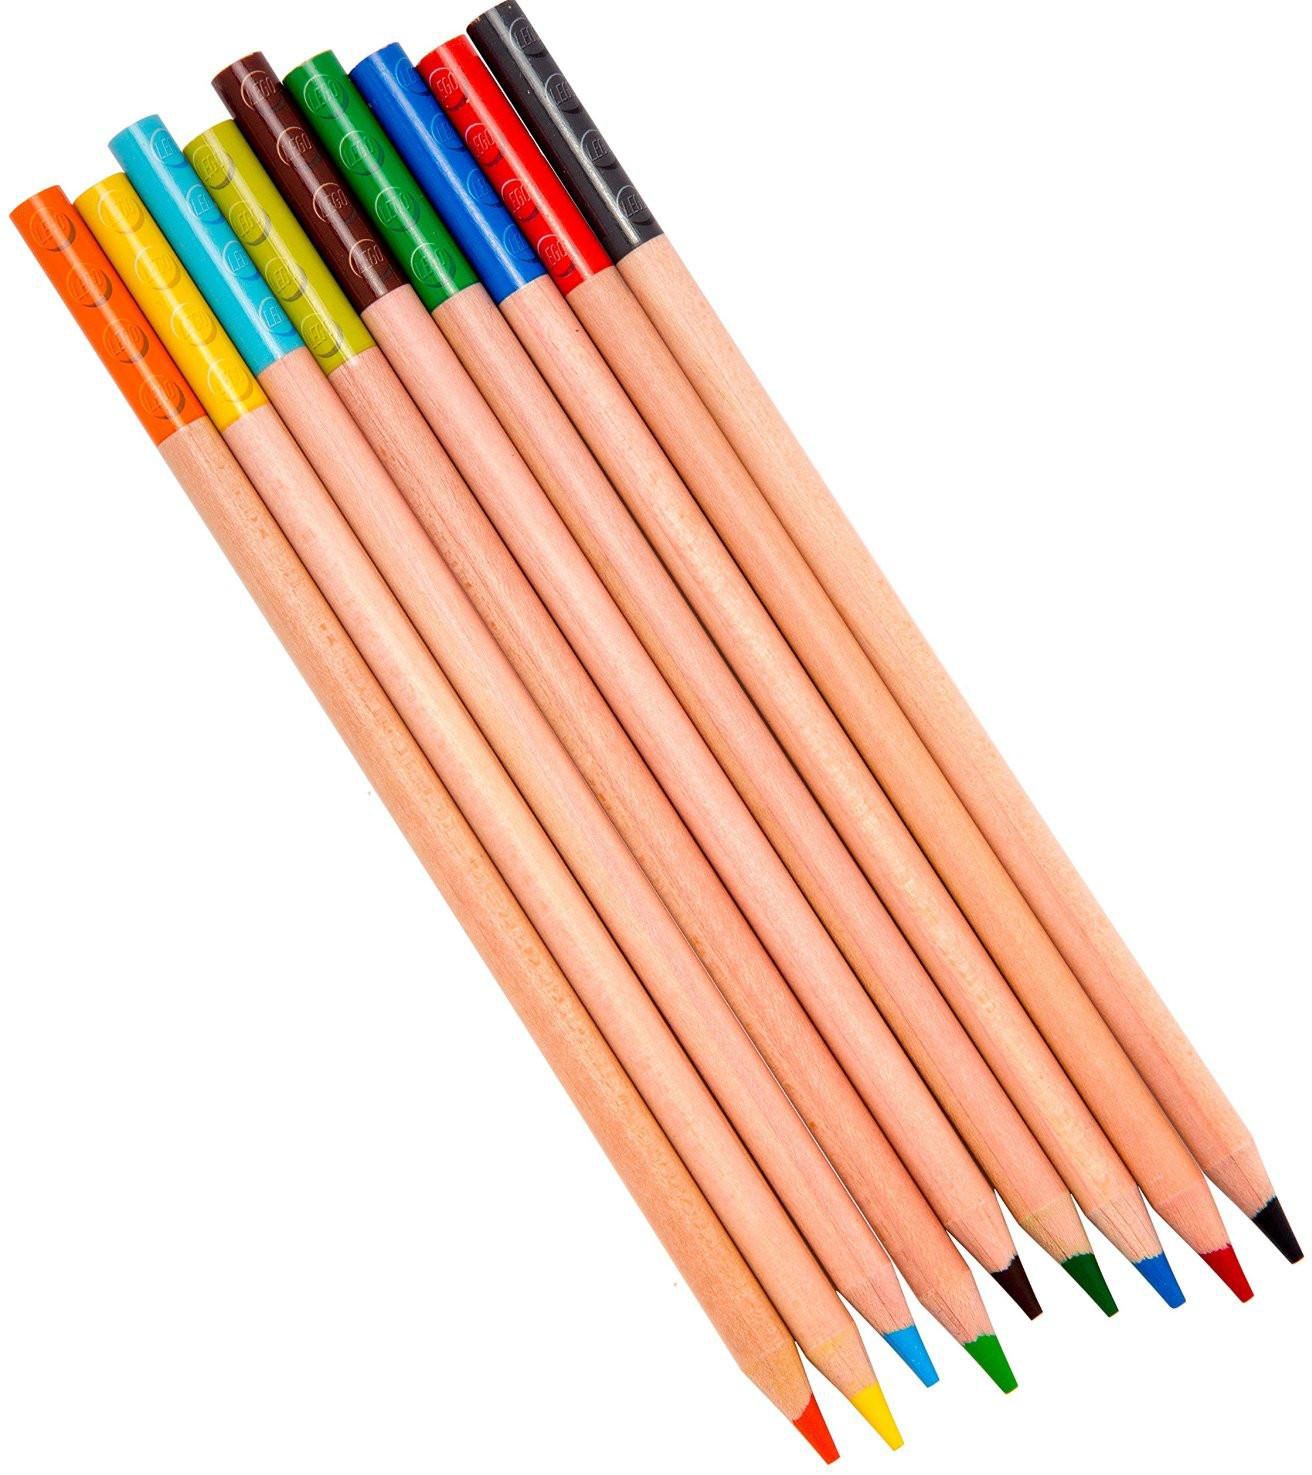 Lego Colouring Pencils